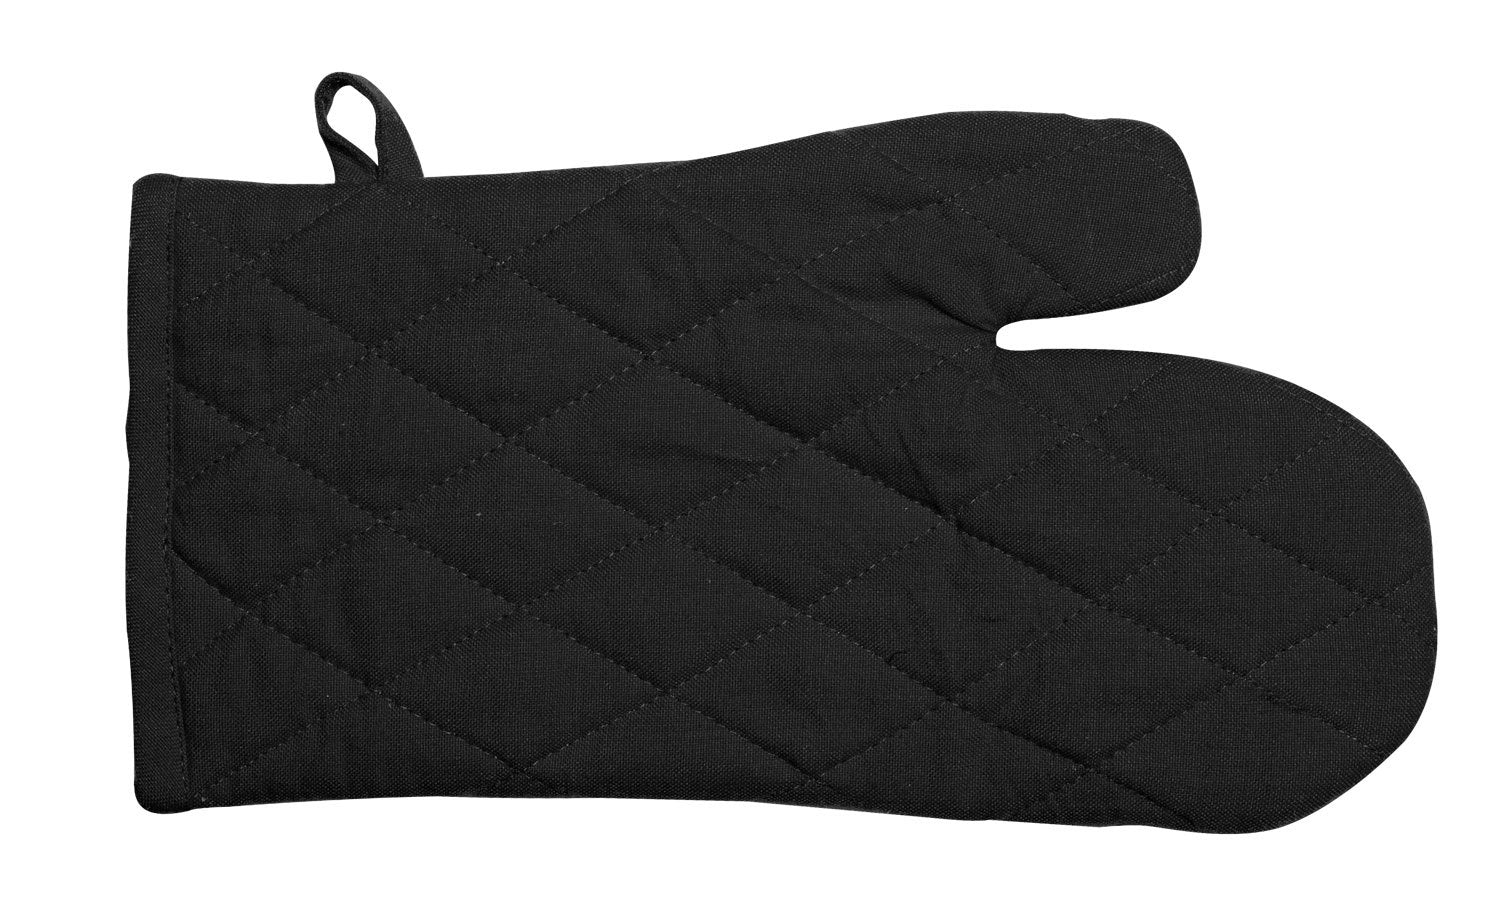 Manhattan Oven Glove - 100% Cotton in Black